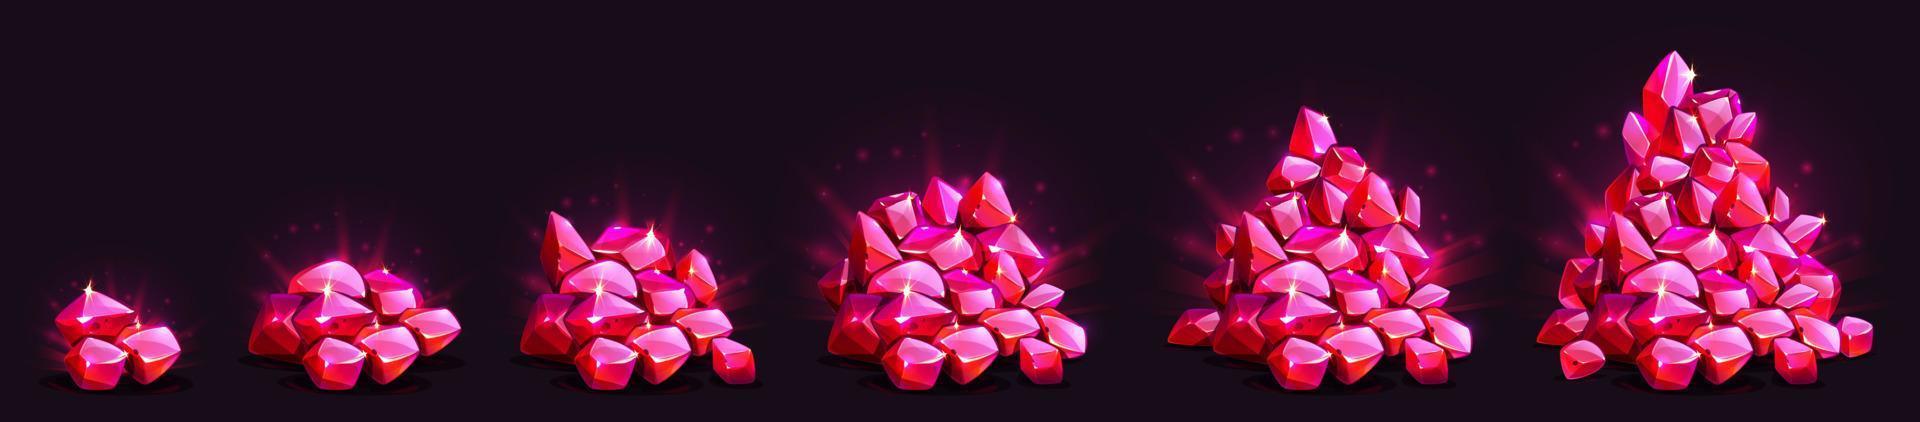 gemma cristalli in crescita mucchio, gioco rosso splendore pietre preziose vettore